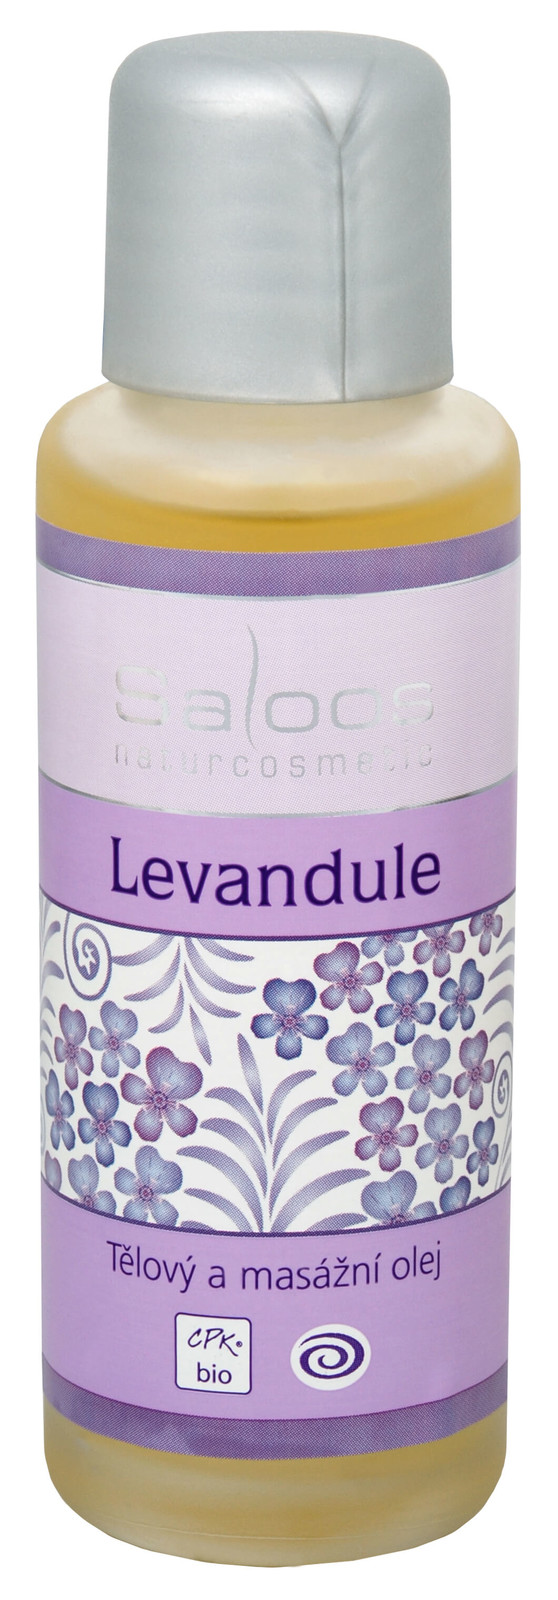 Saloos Bio tělový a masážní olej - Levandule 500 ml